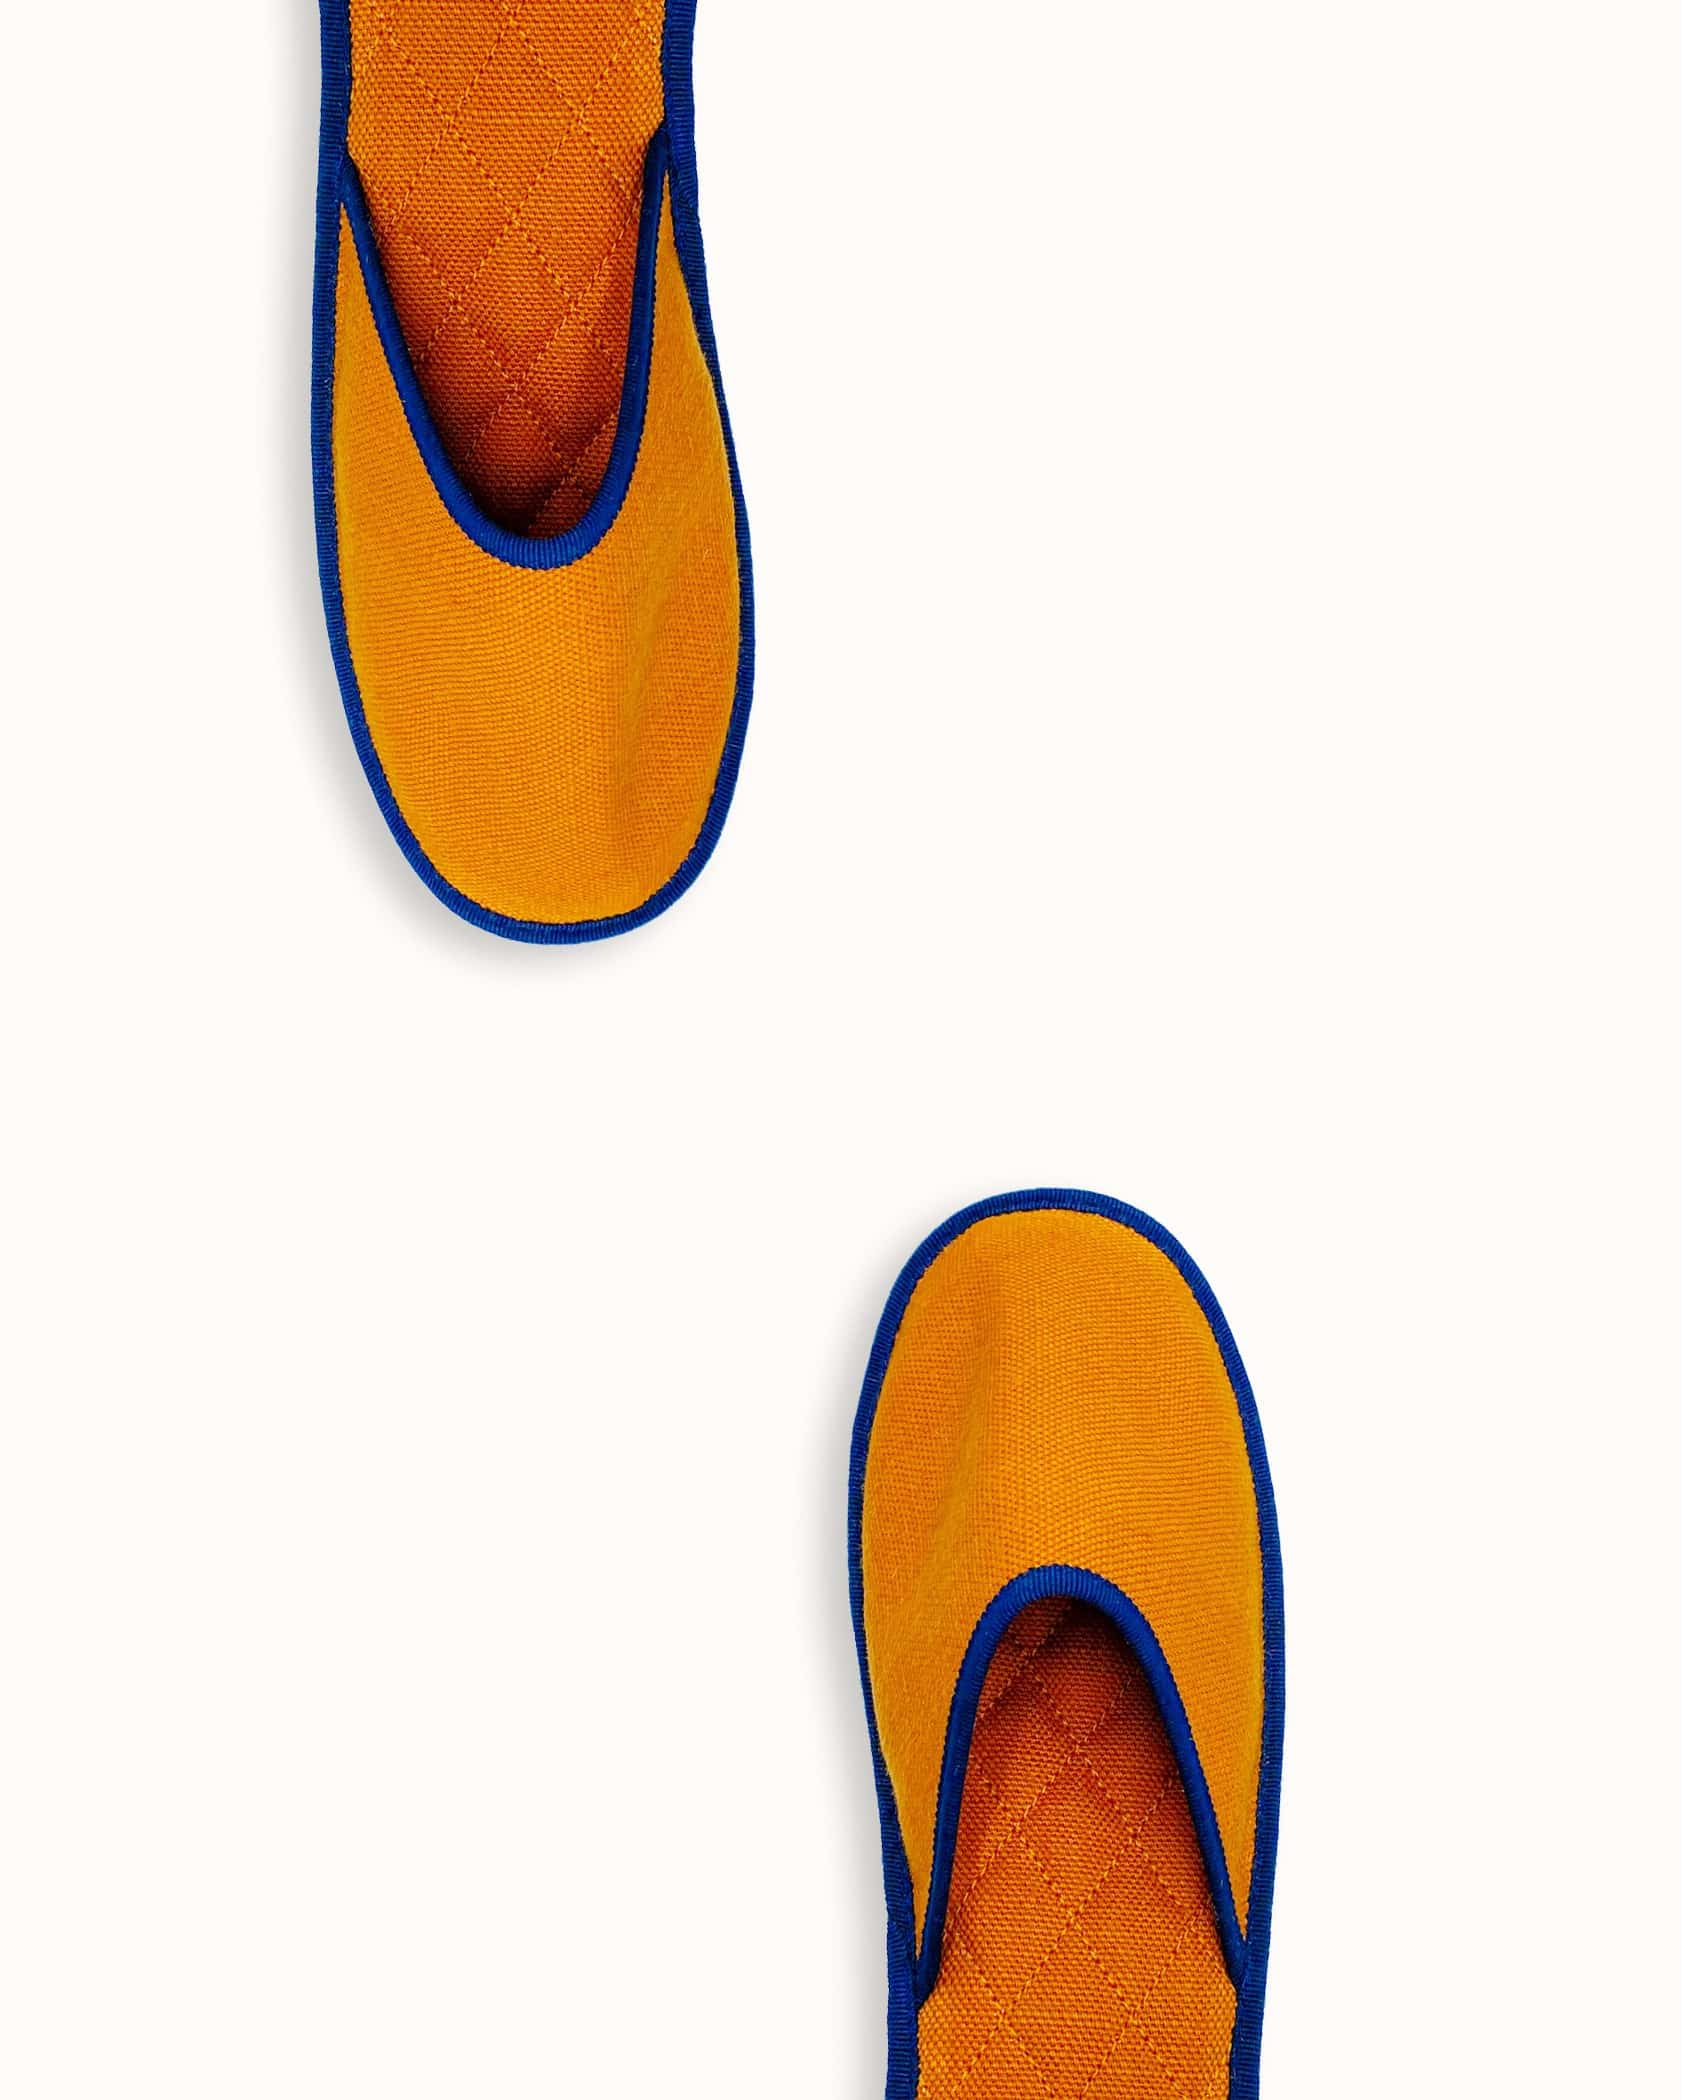 Chausson français pour homme, femme et enfant fabriqué en France. Modèle Feu (orange et bleu), une pantoufle comme à l’hôtel vêtue d’un rembourrage matelassé et d’une finition sophistiquée.